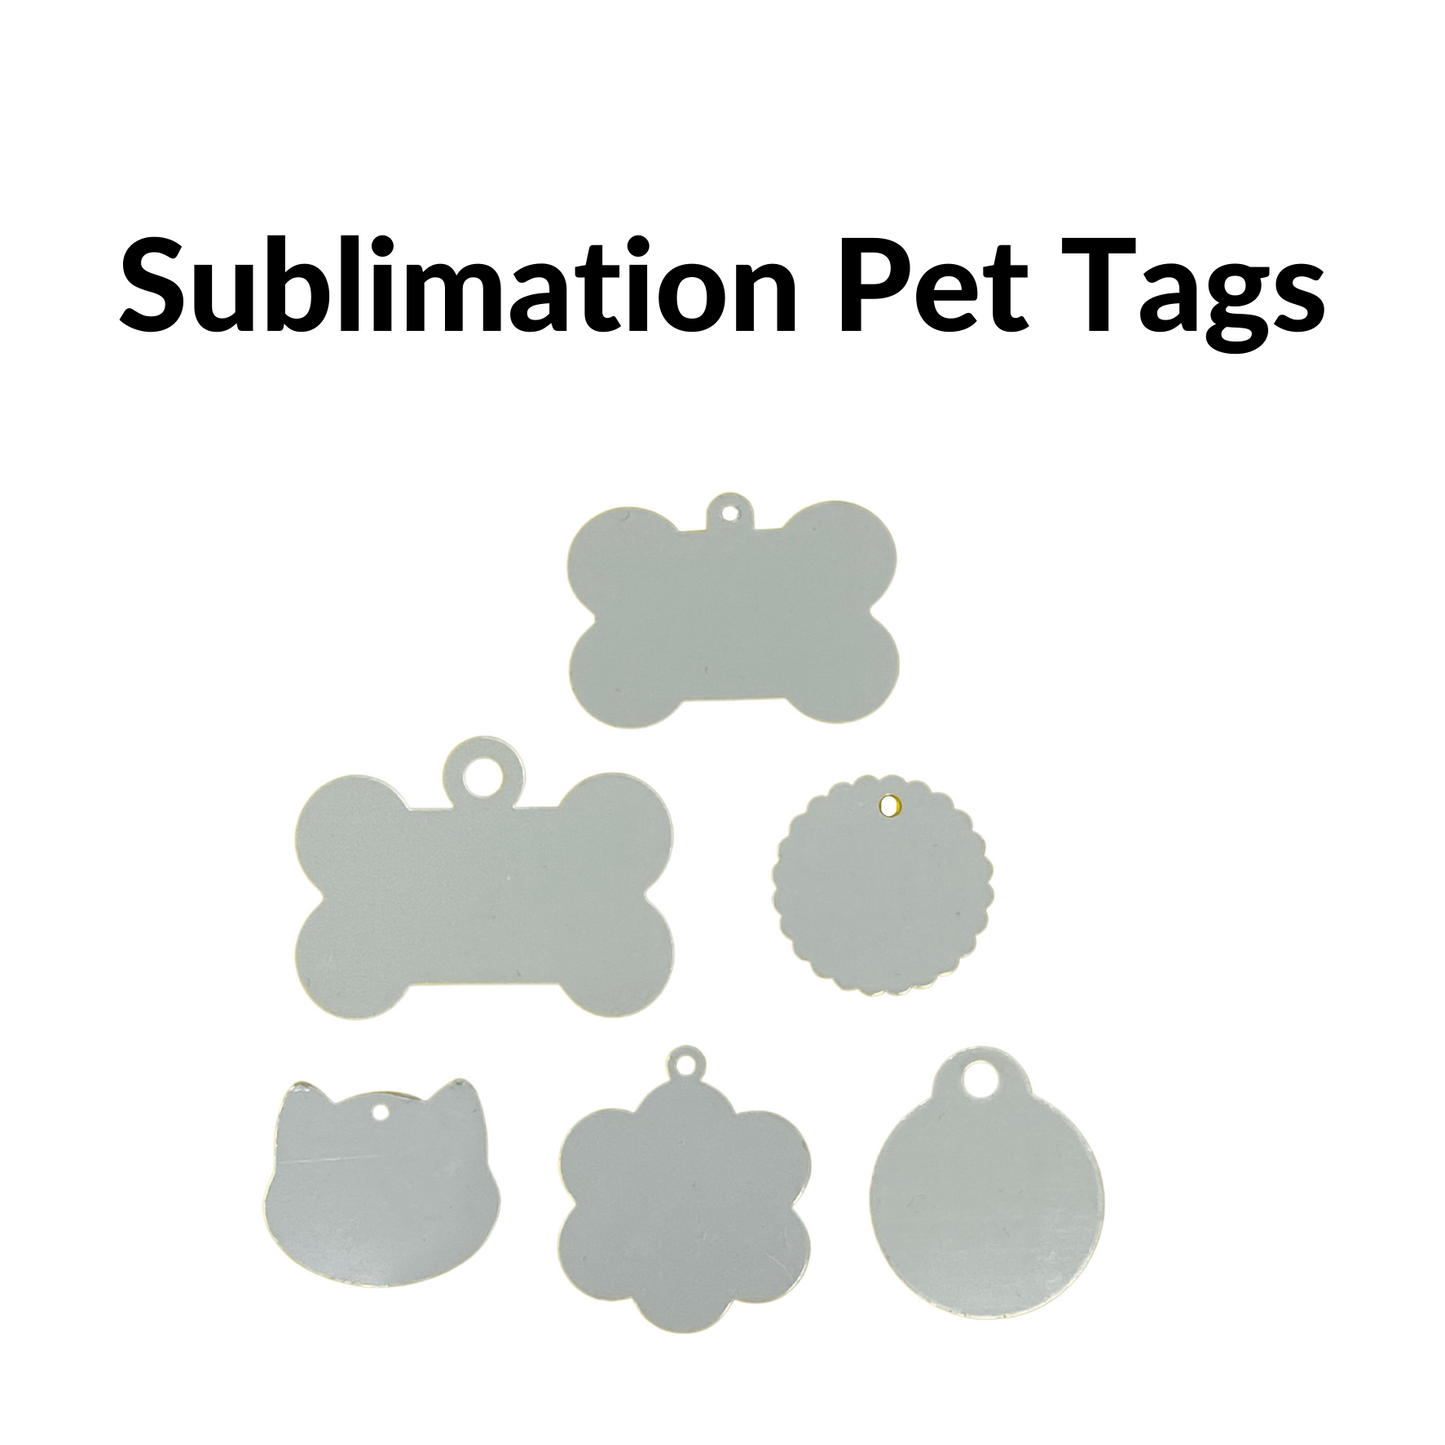 Sublimation Pet Tags